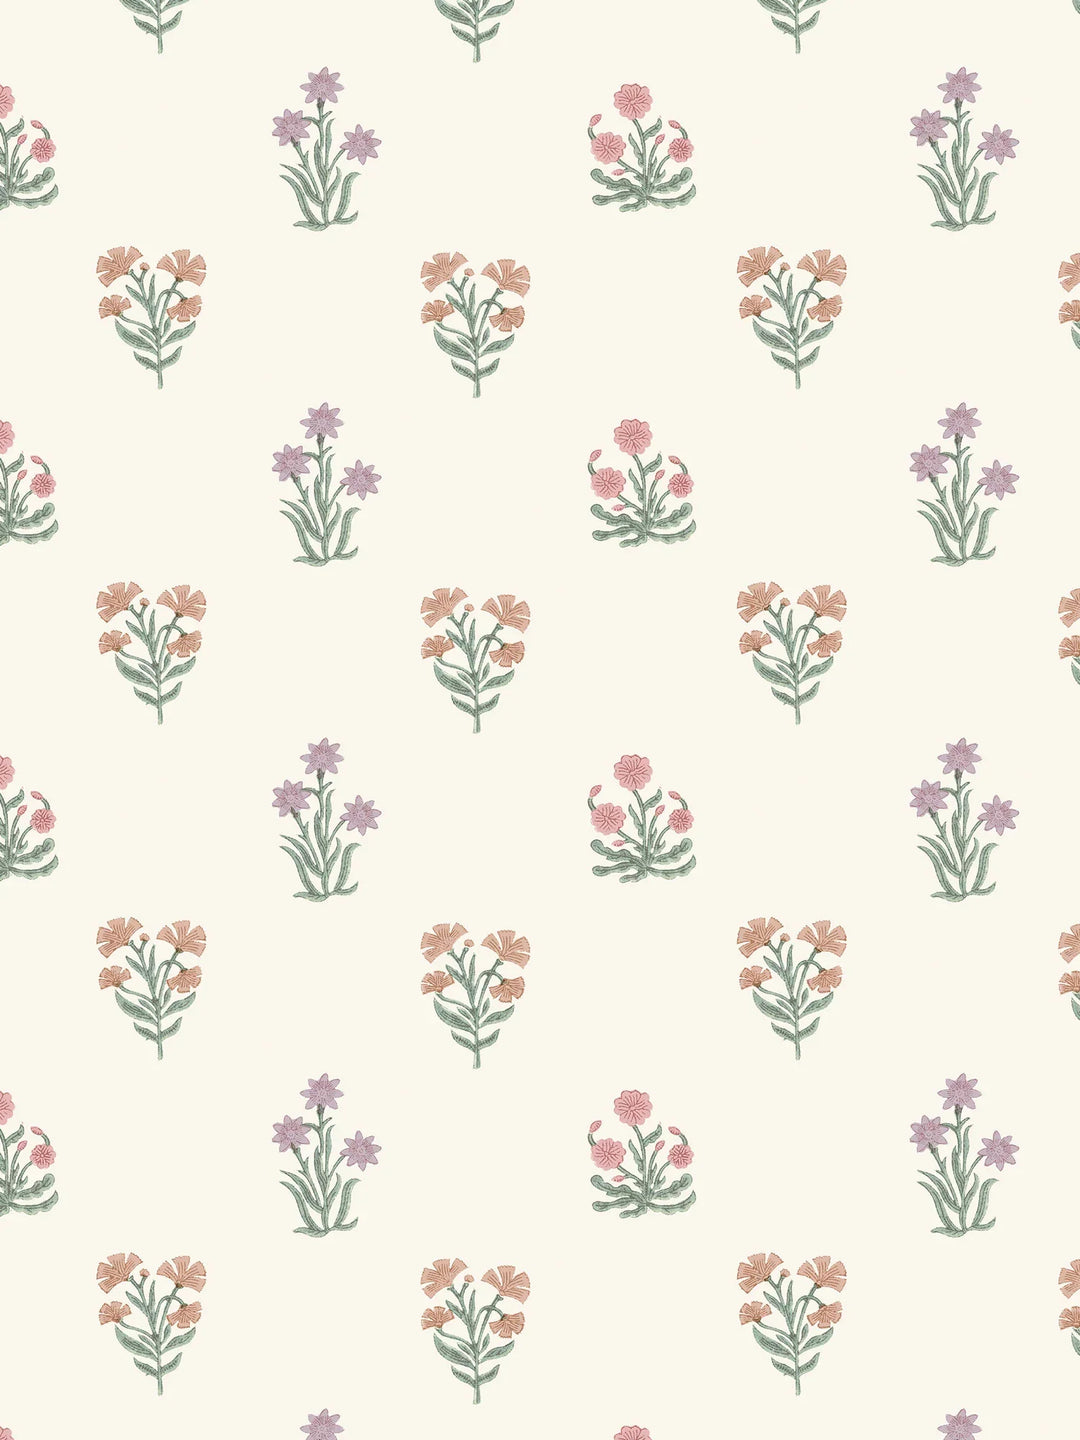 jaipur-flower-wallpaper-block-printed-indian-textile-design-dado-atelier-jadeit-pink-orange